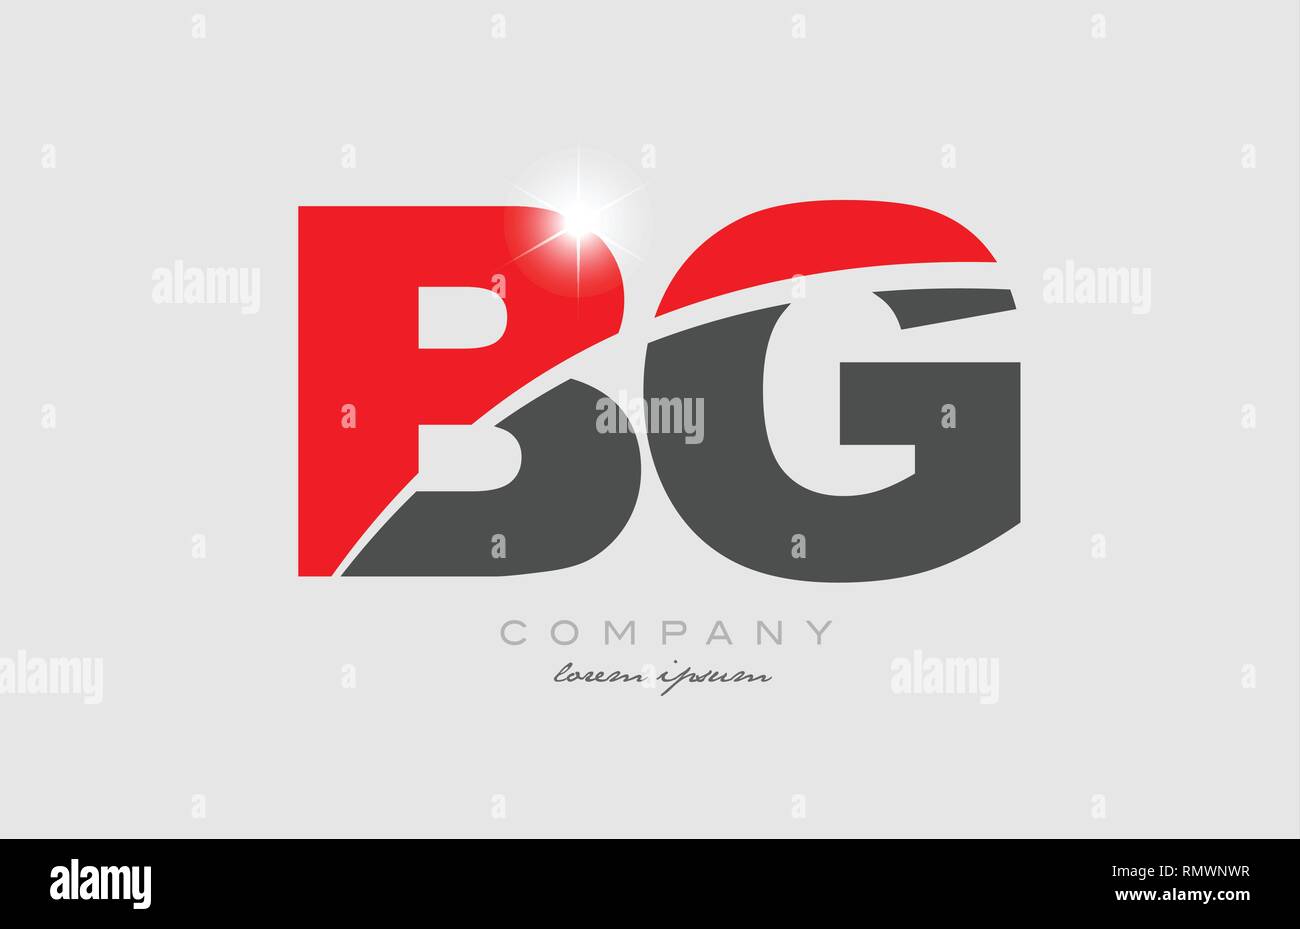 Combinaison lettre bg b g en couleur rouge gris logo design de l'alphabet  l'icône appropriée pour une société ou entreprise Image Vectorielle Stock -  Alamy